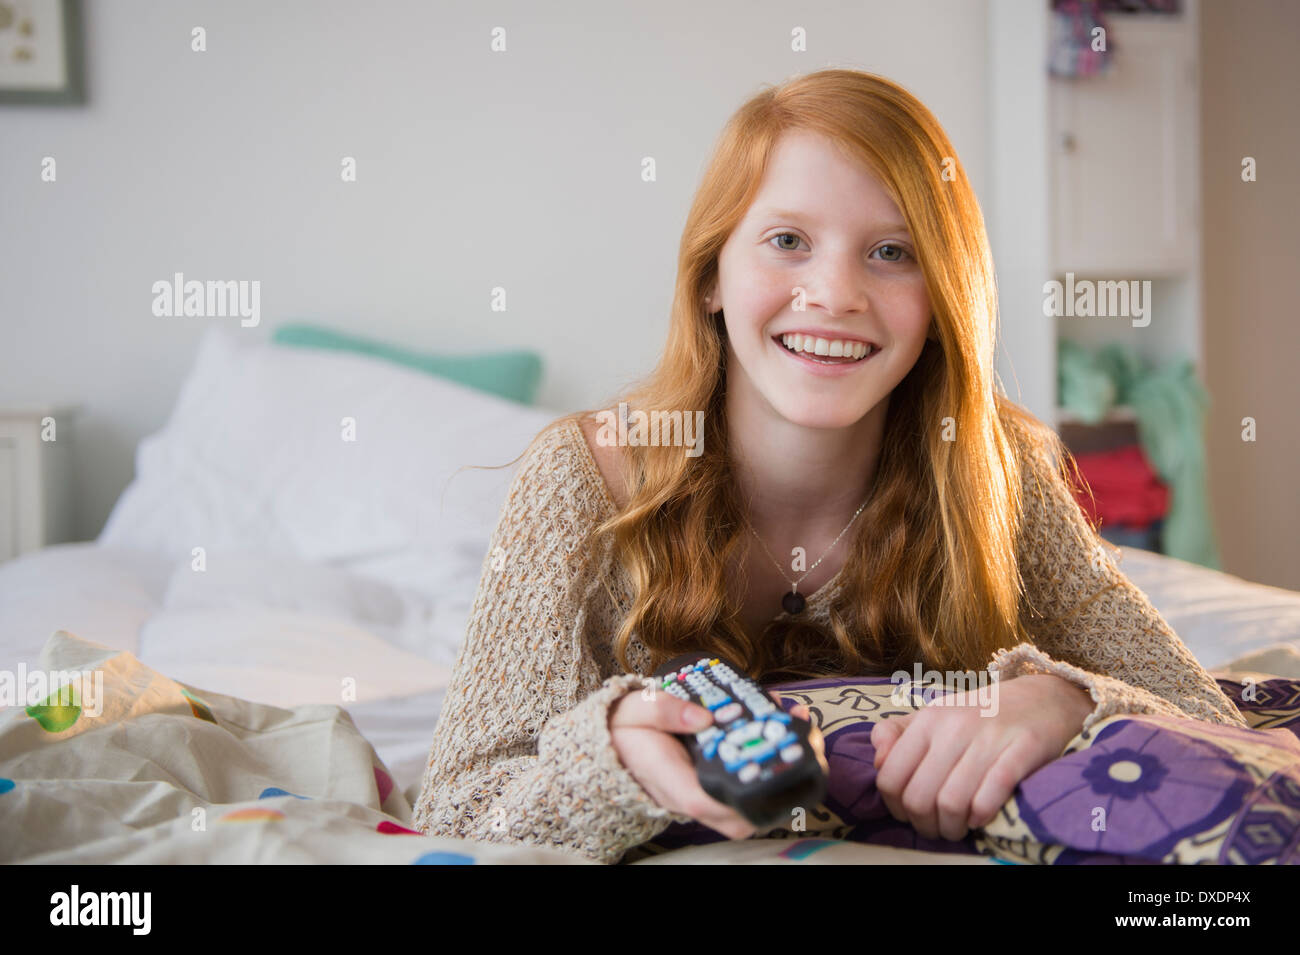 Porträt eines Mädchens (12-13) auf Bett liegend Stockfoto